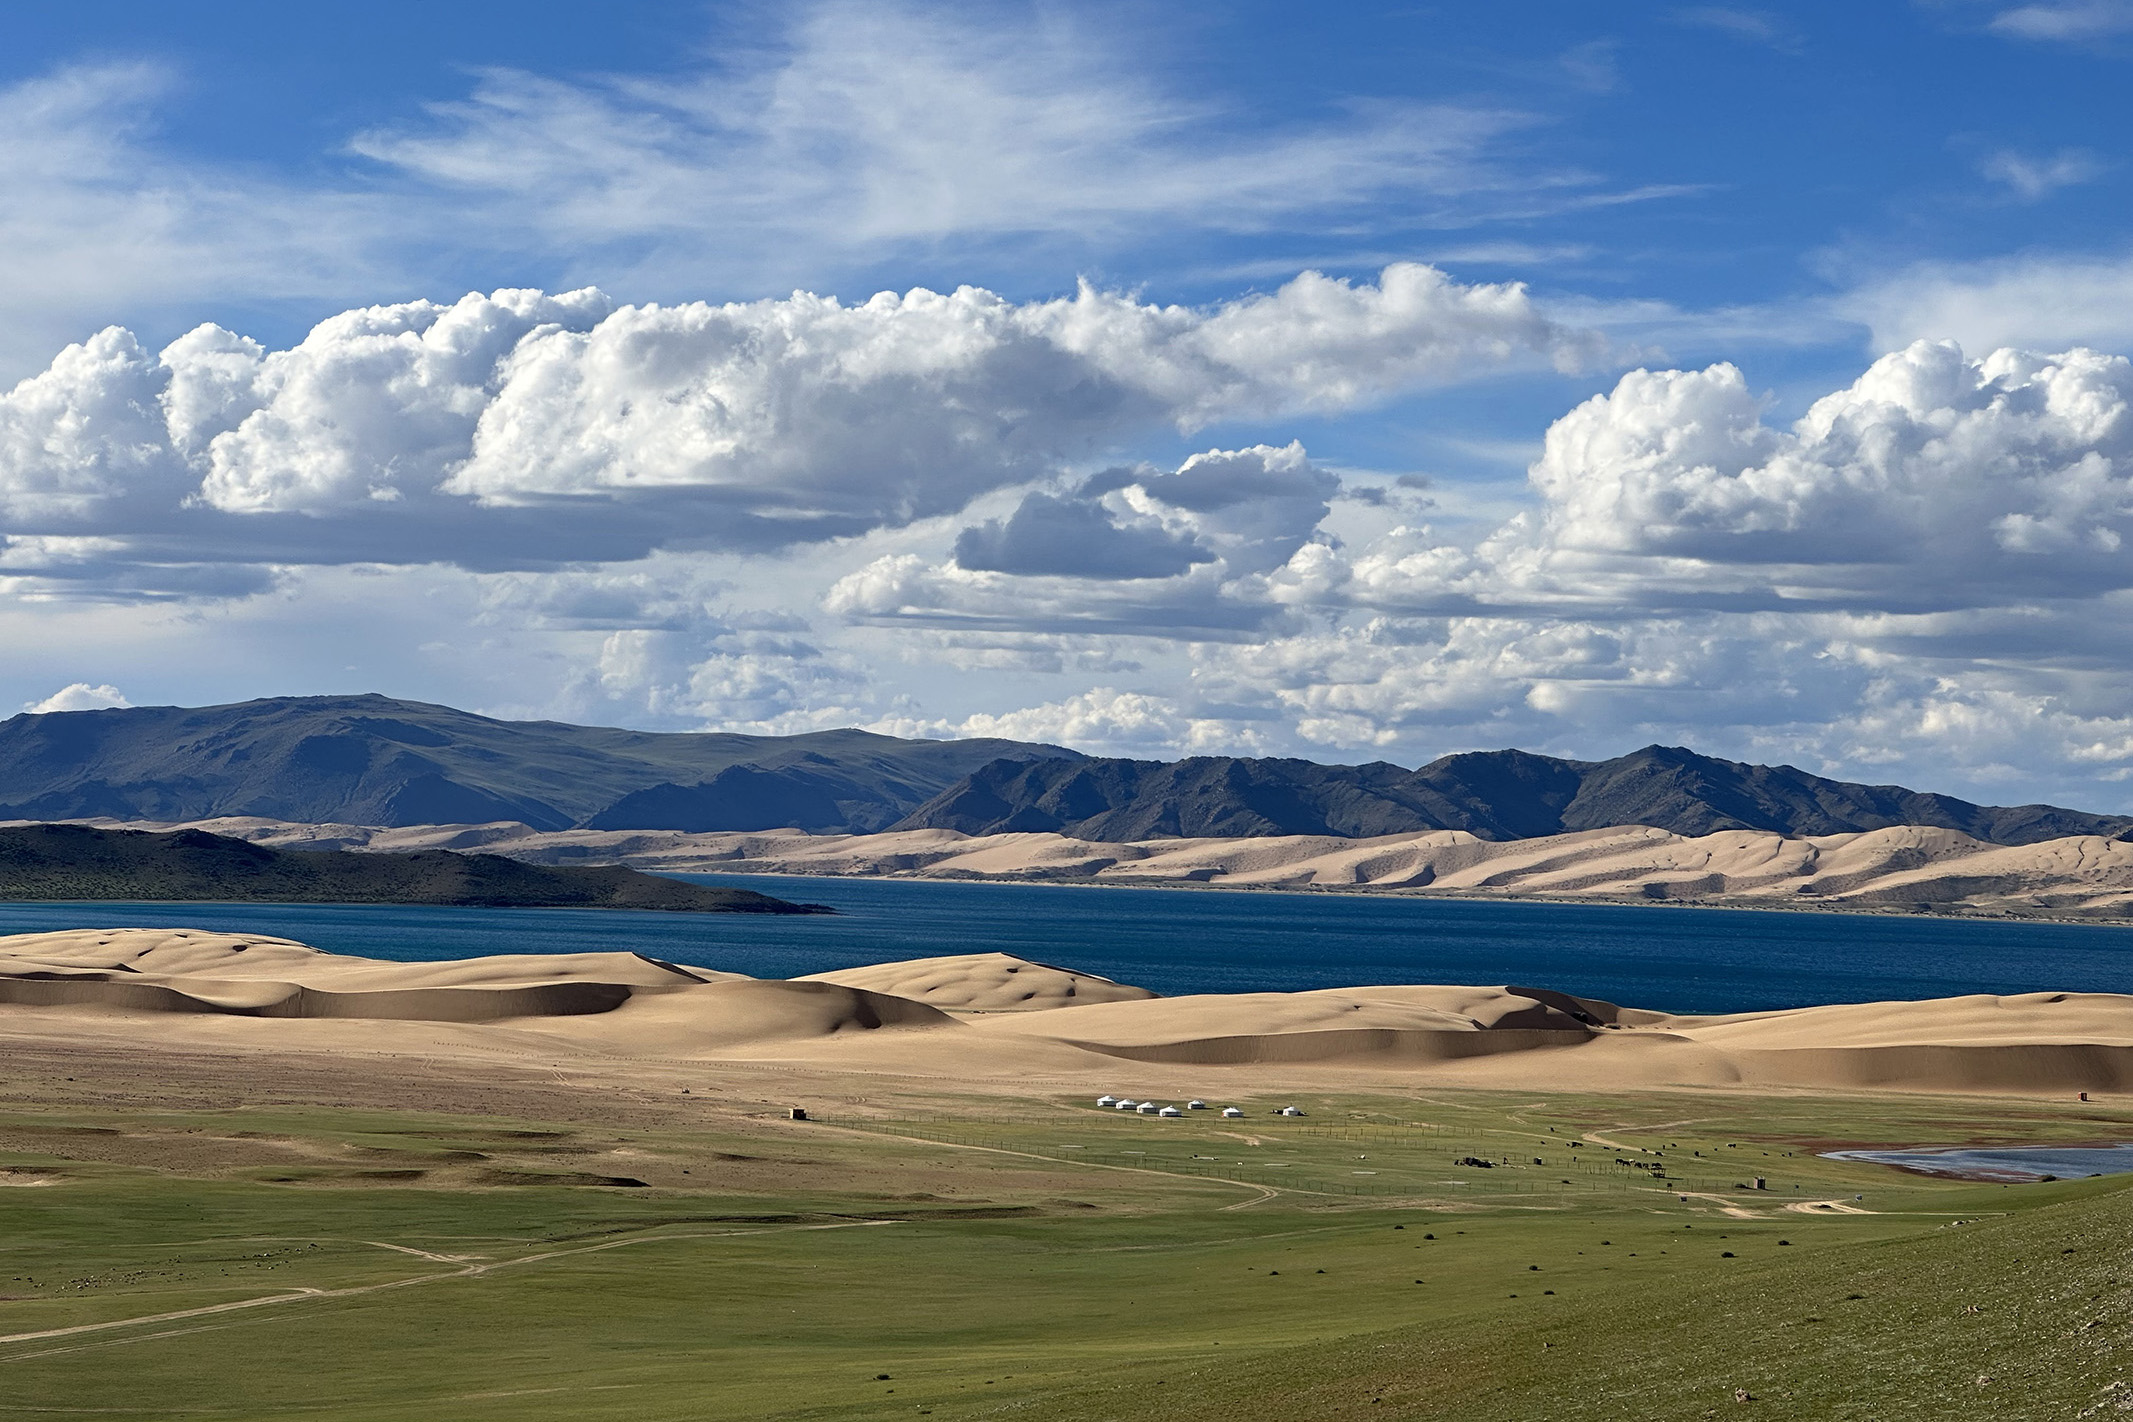 Wild Mongolia